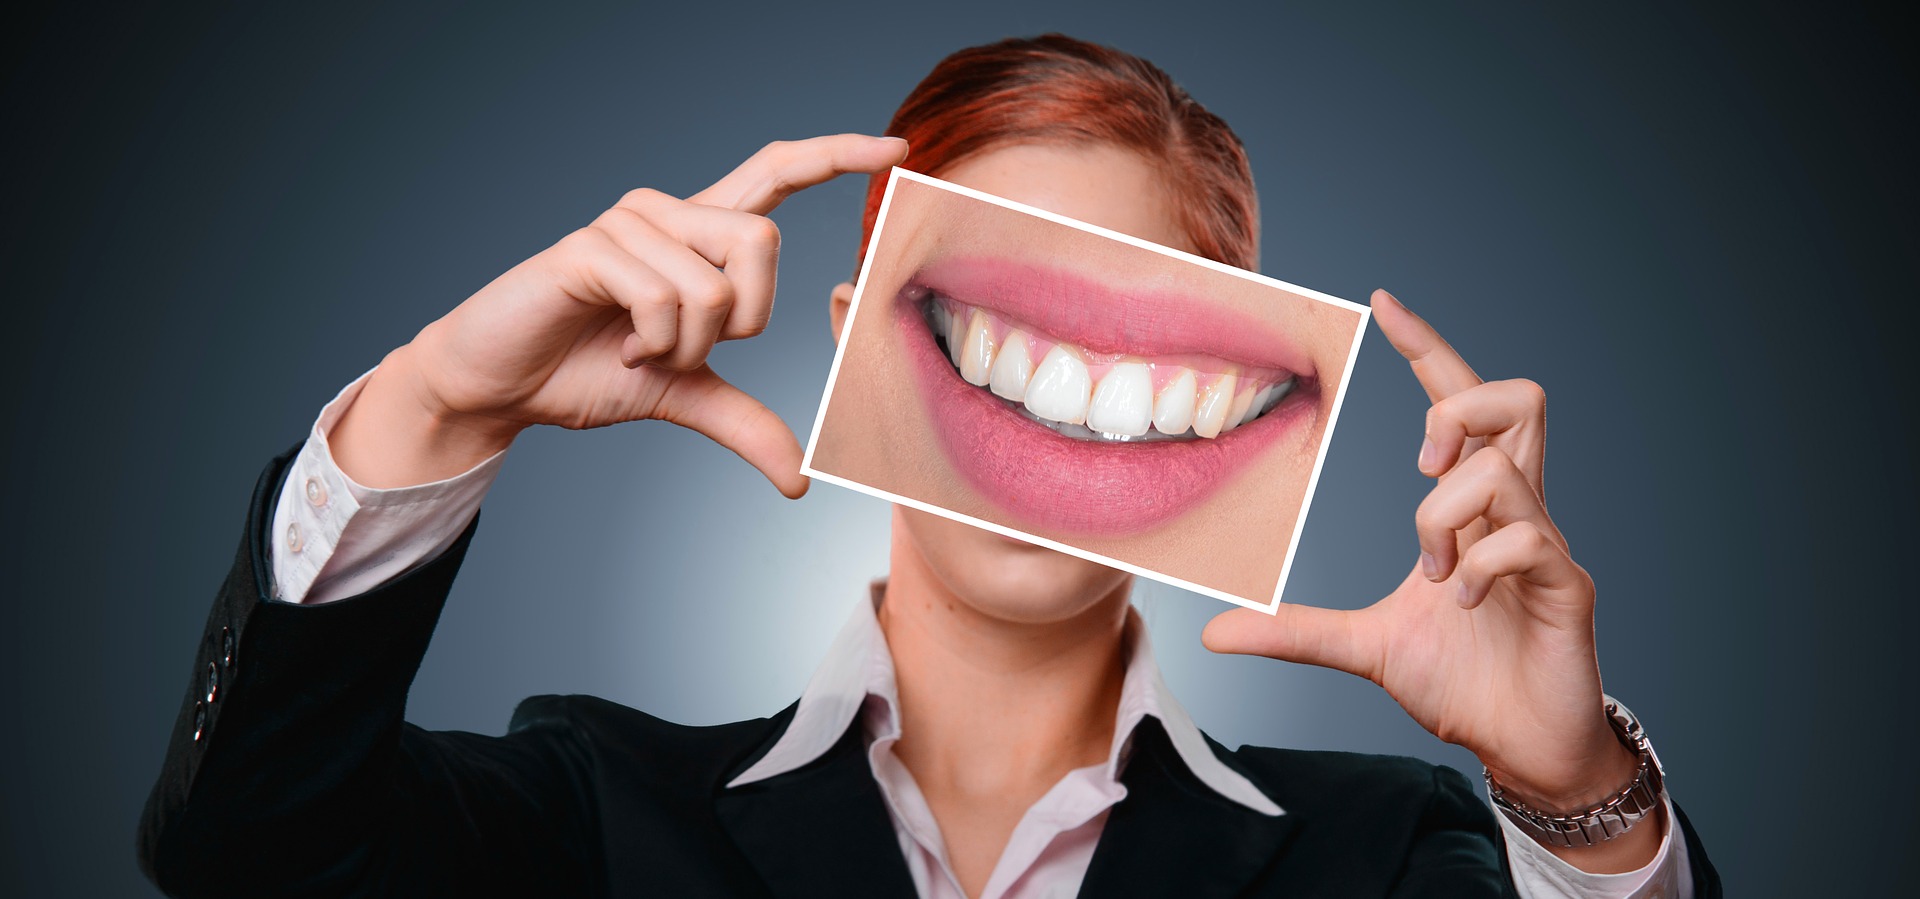 חיוך מושלם טיפים לשמירה על שיניים בריאות